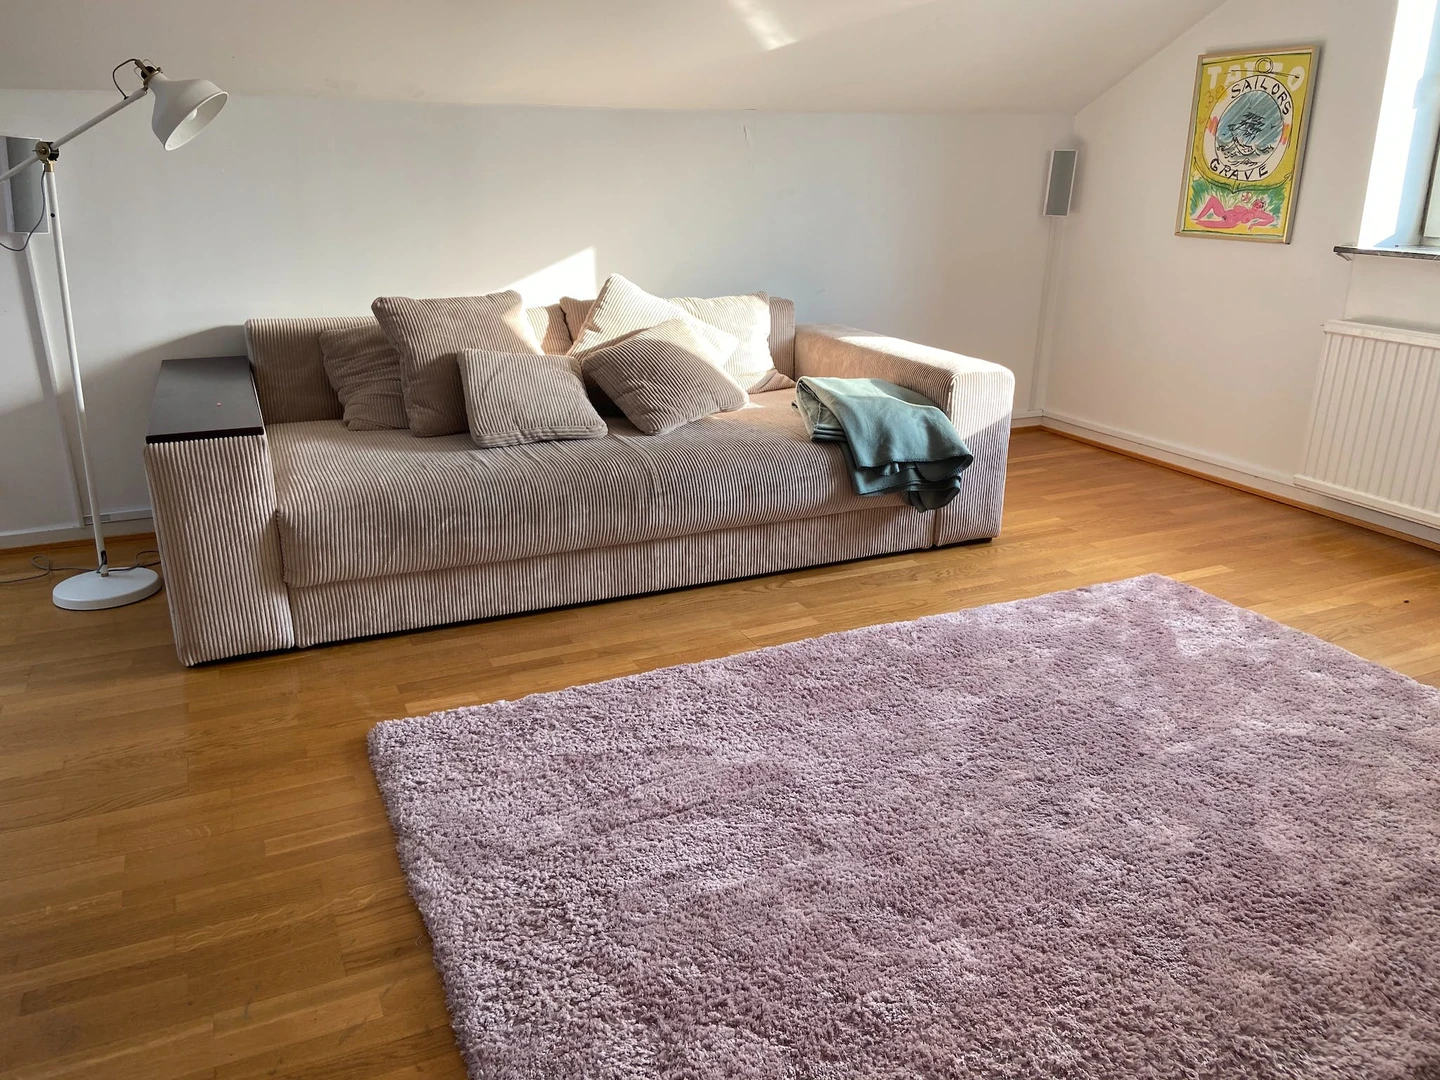 Alquiler de habitación en piso compartido en Gotemburgo